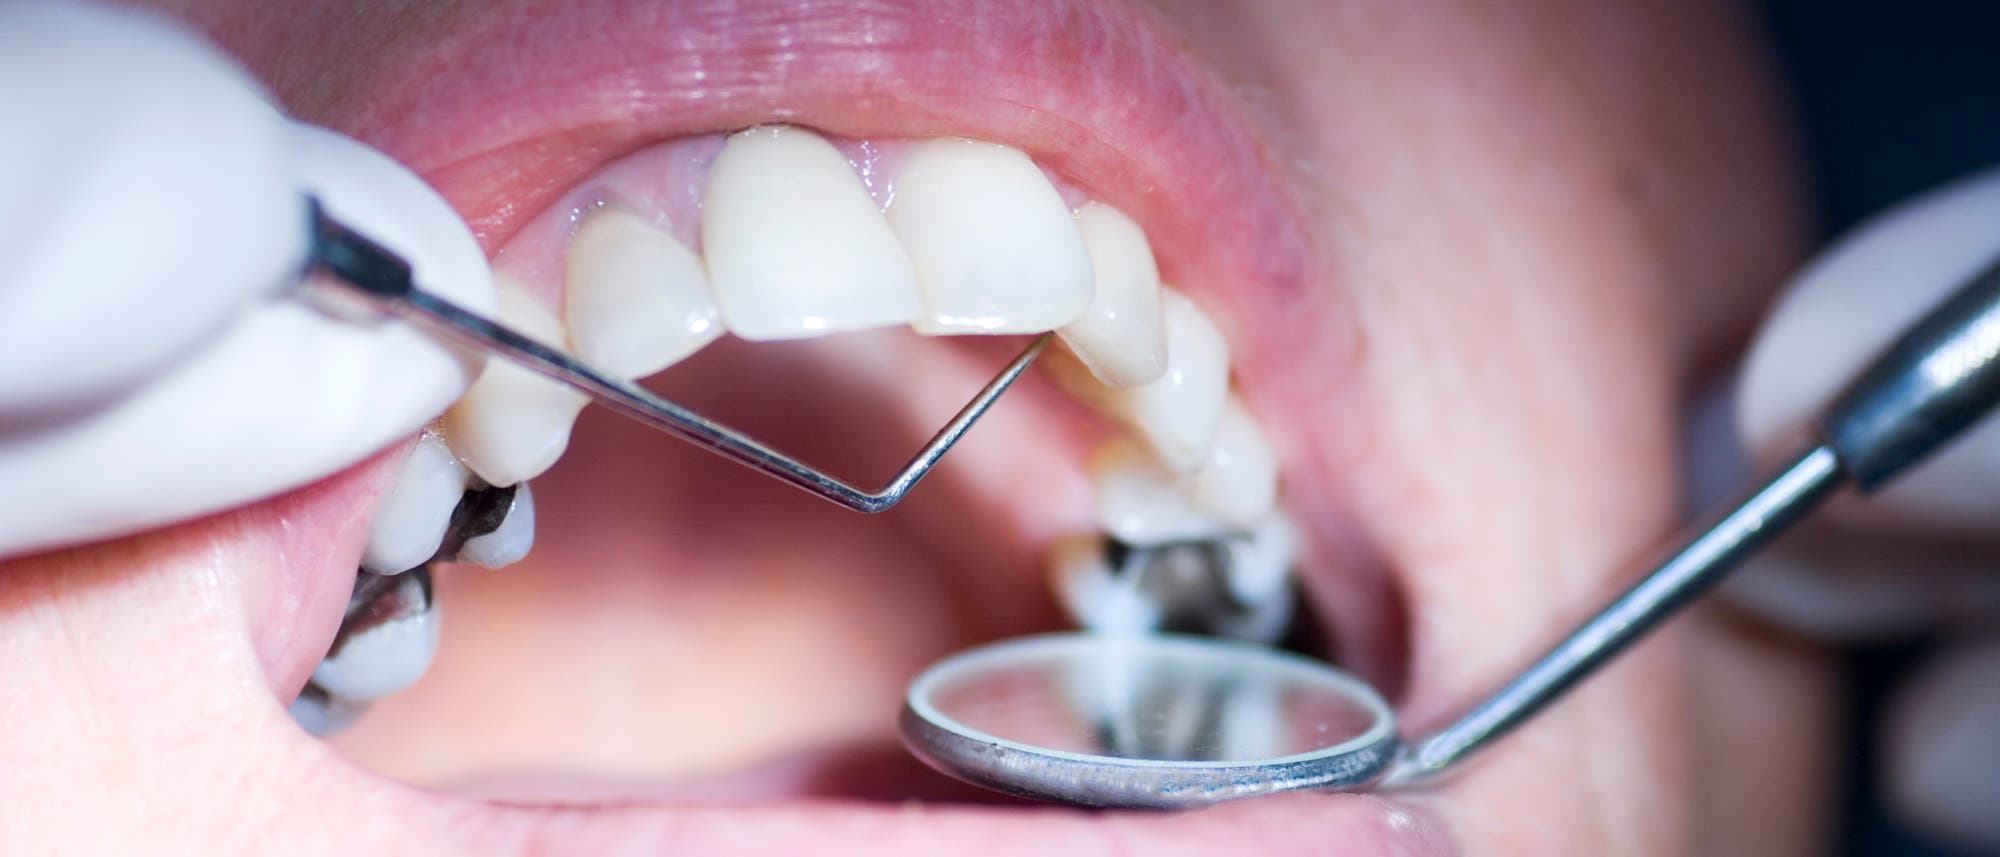 Geöffneter Mund während Zahnbehandlung